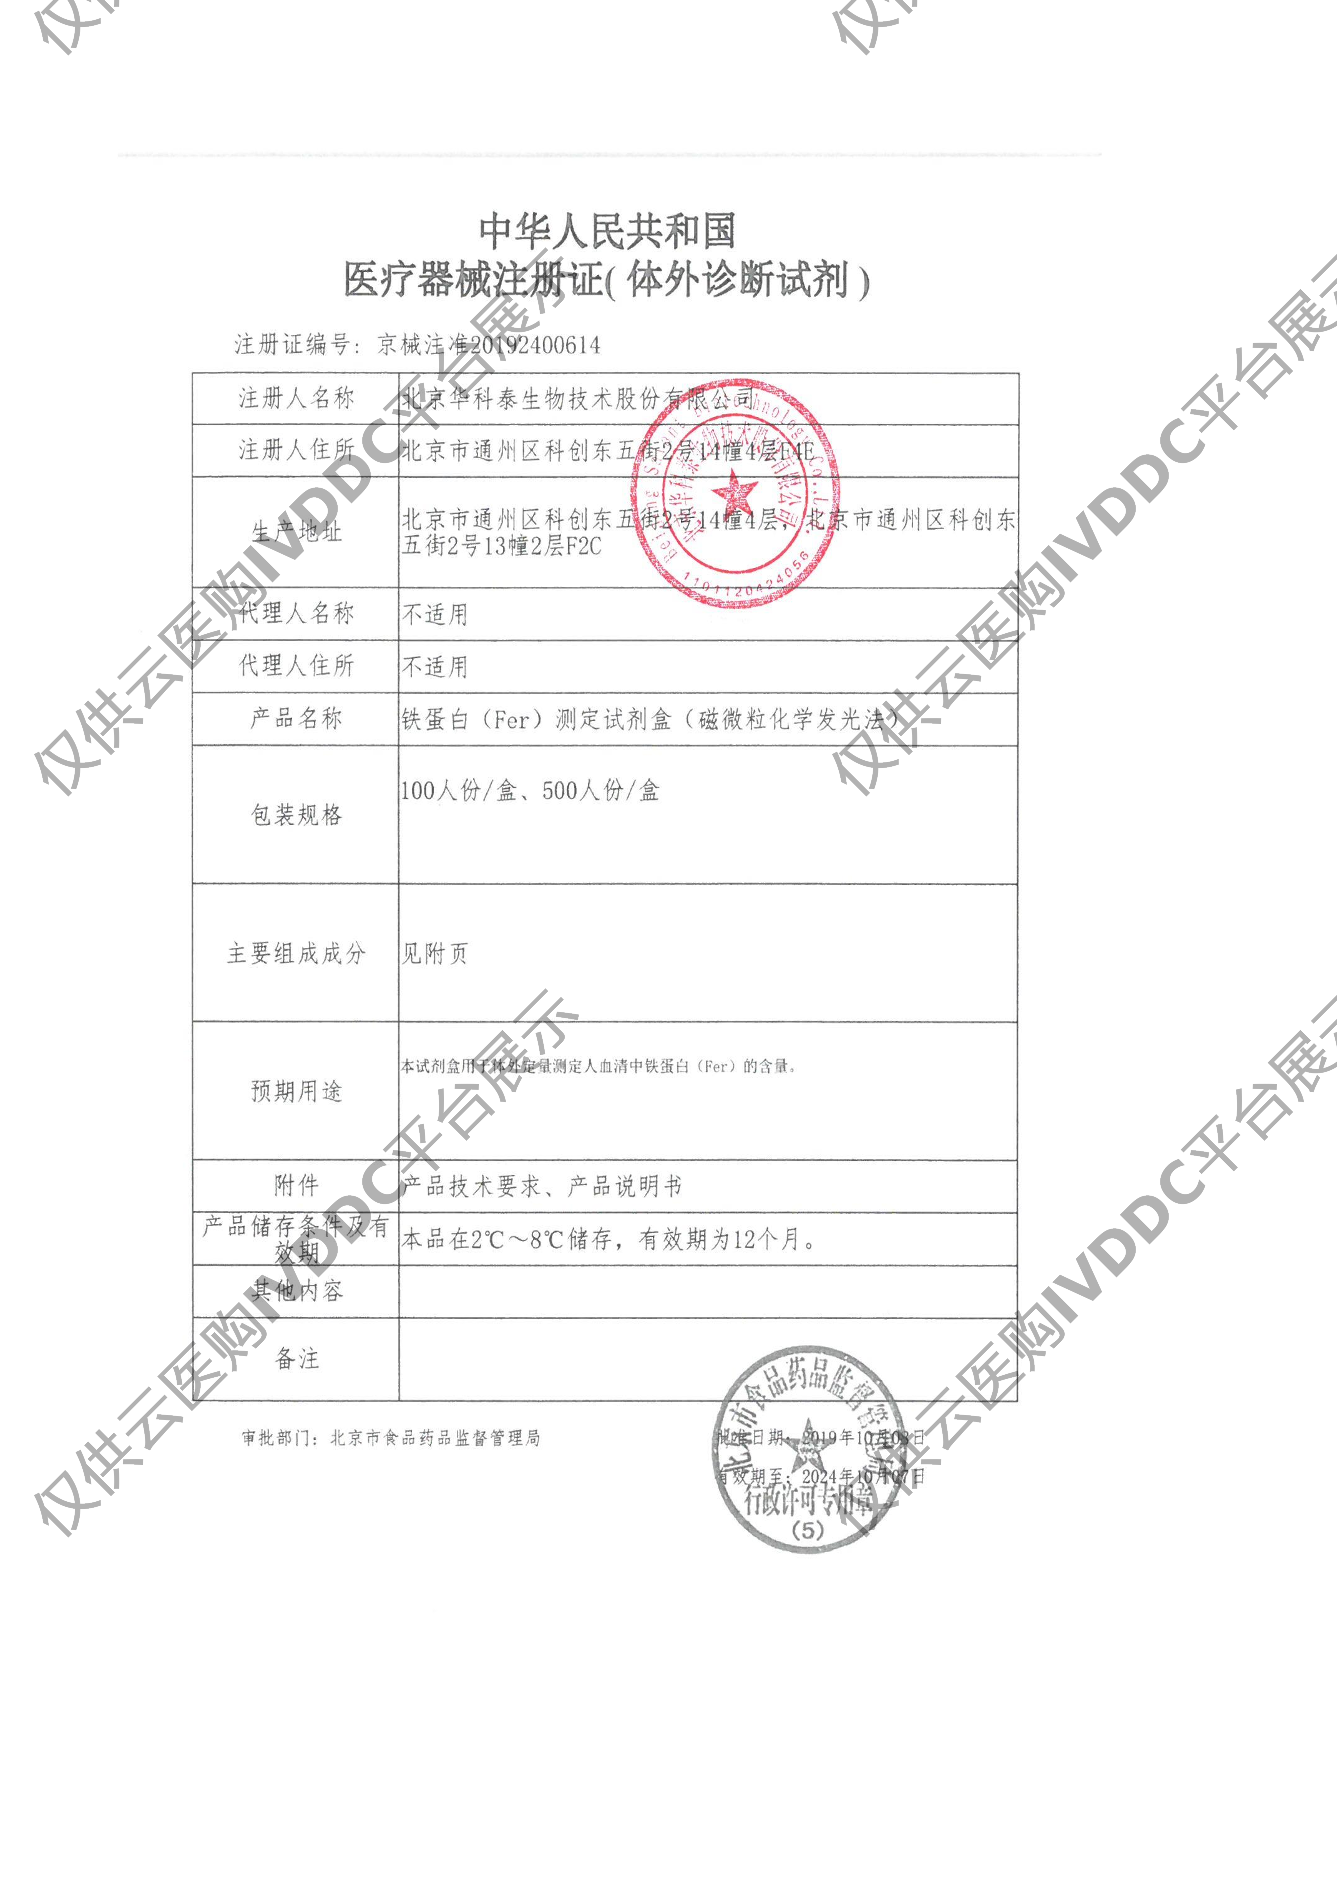 【华科泰】铁蛋白（Fer）测定试剂盒（磁微粒化学发光法）注册证